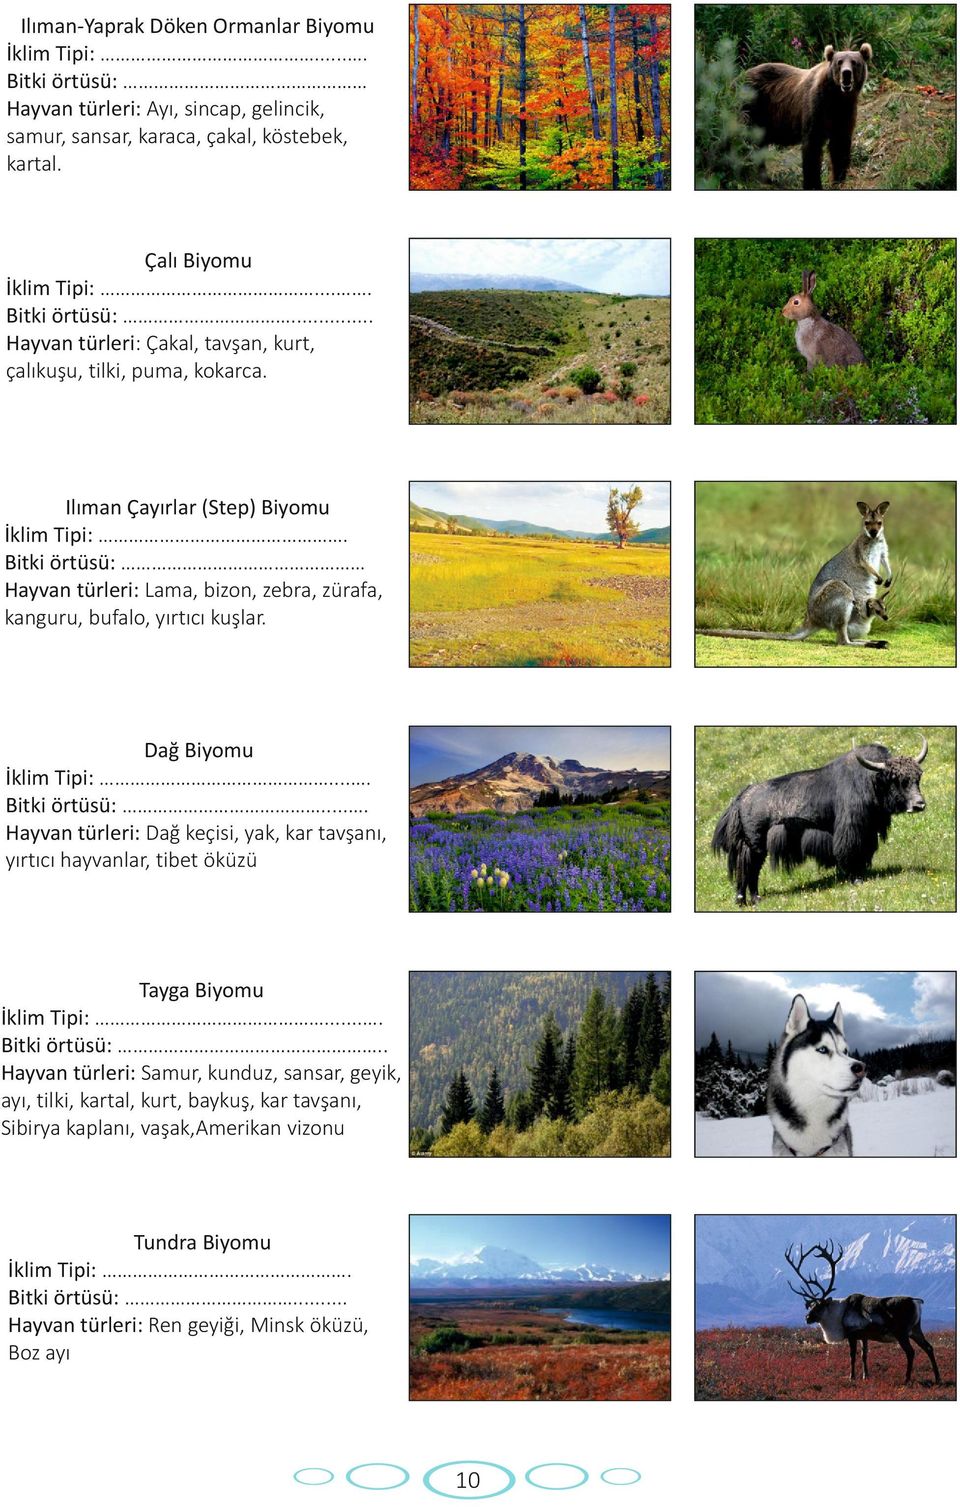 ... Bitki örtüsü:.. Hayvan türleri: Samur, kunduz, sansar, geyik, ayı, tilki, kartal, kurt, baykuş, kar tavşanı, Sibirya kaplanı, vaşak,amerikan vizonu Tundra Biyomu İklim Tipi:. Bitki örtüsü:.. Hayvan türleri: Ren geyiği, Minsk öküzü, Boz ayı 10